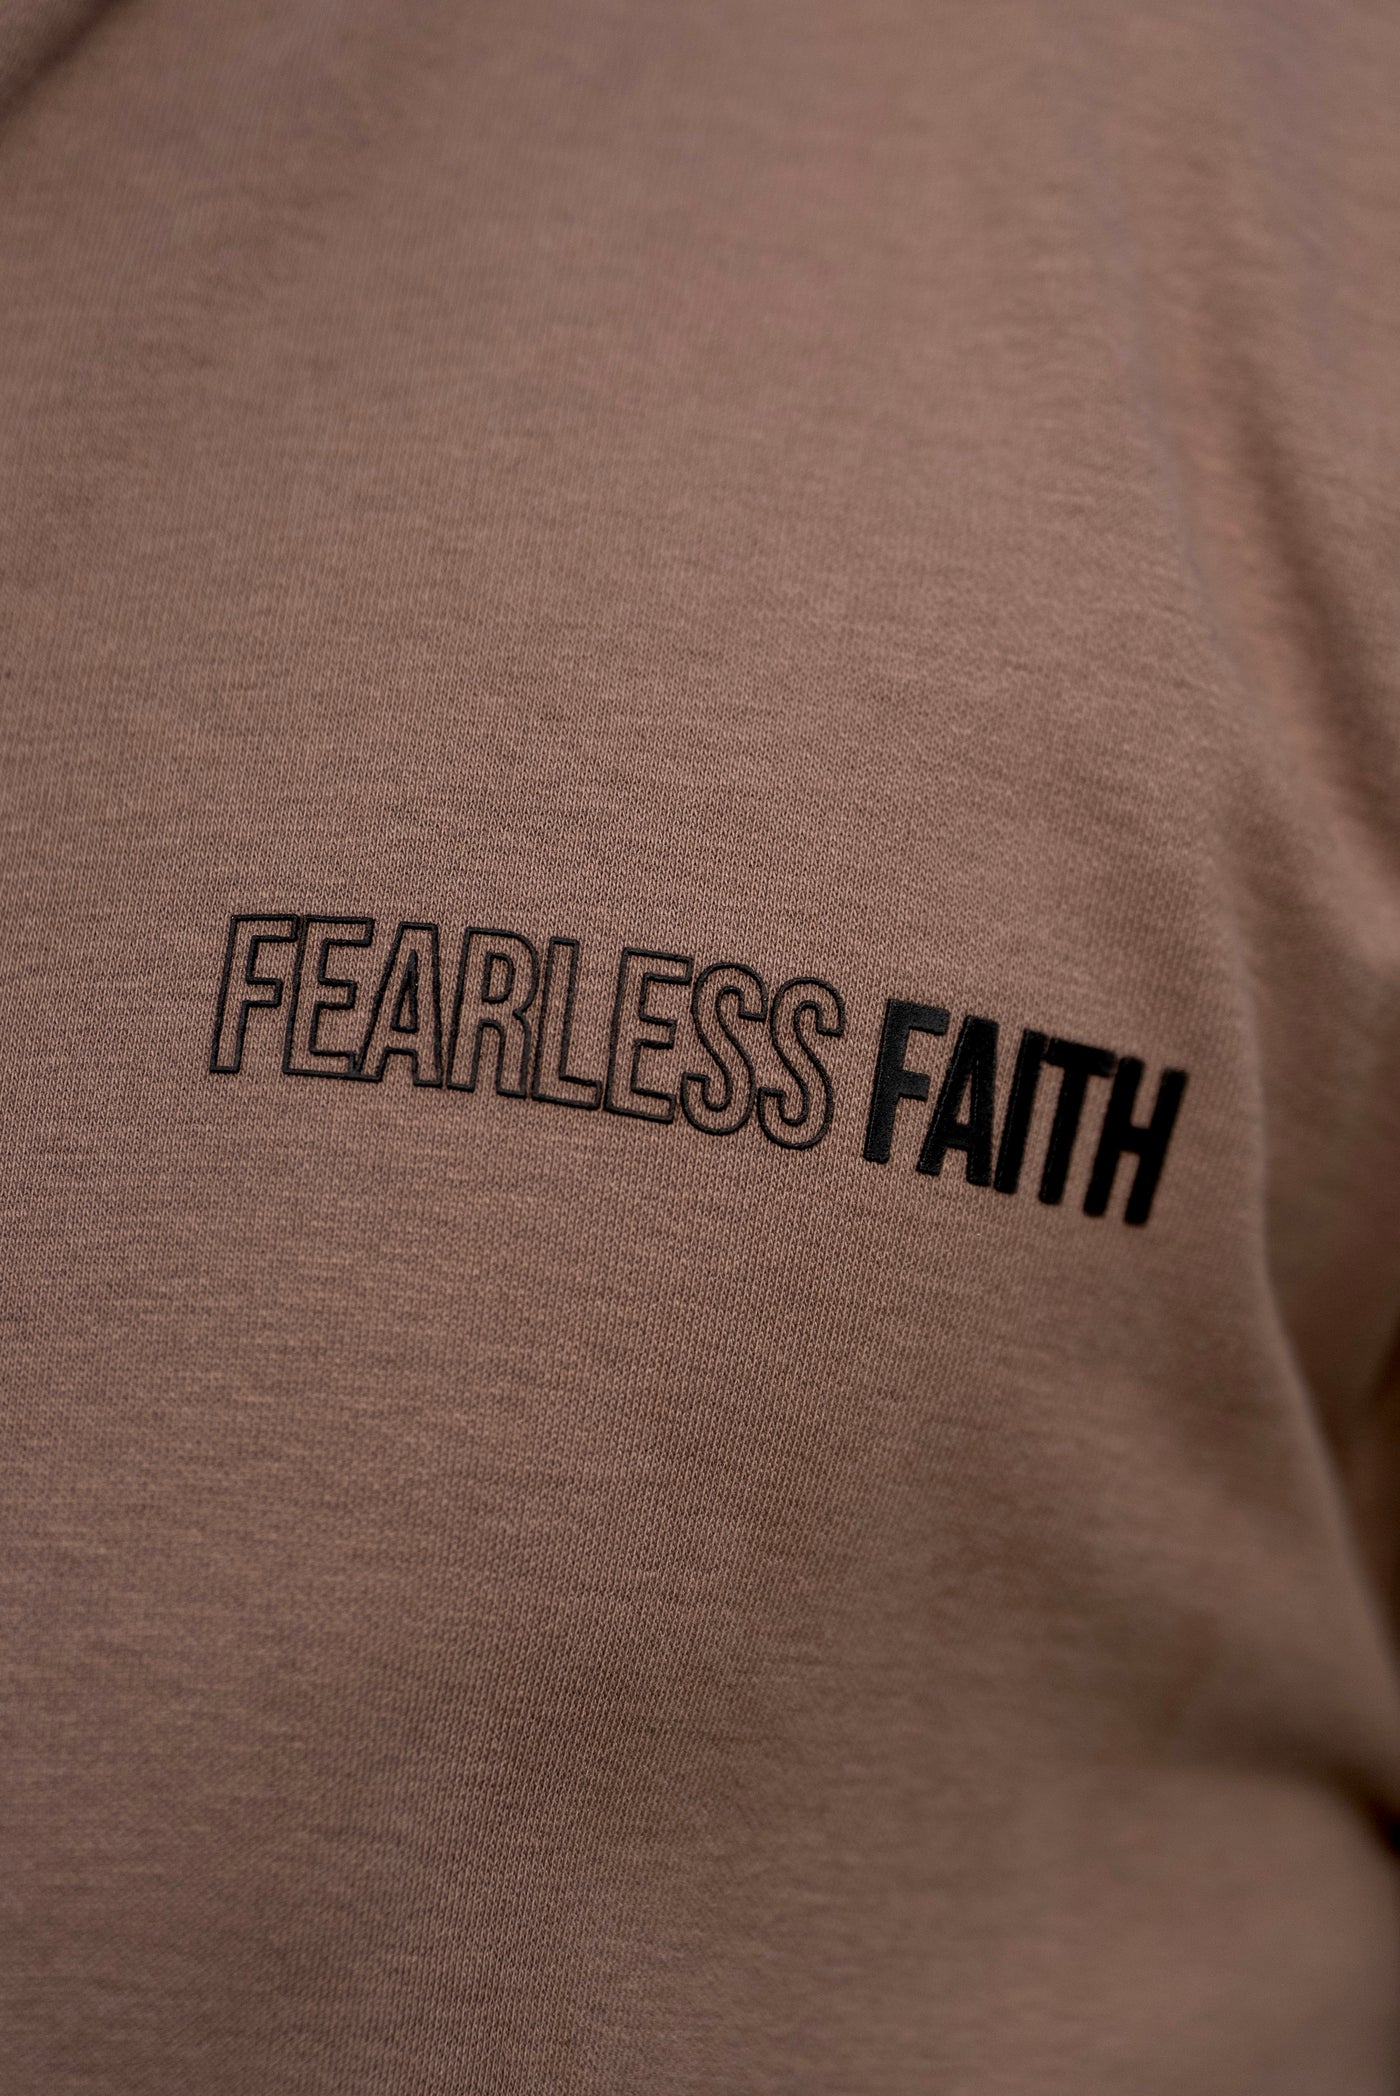 fearless faith mocha tracksuit pant christian clothing army of god